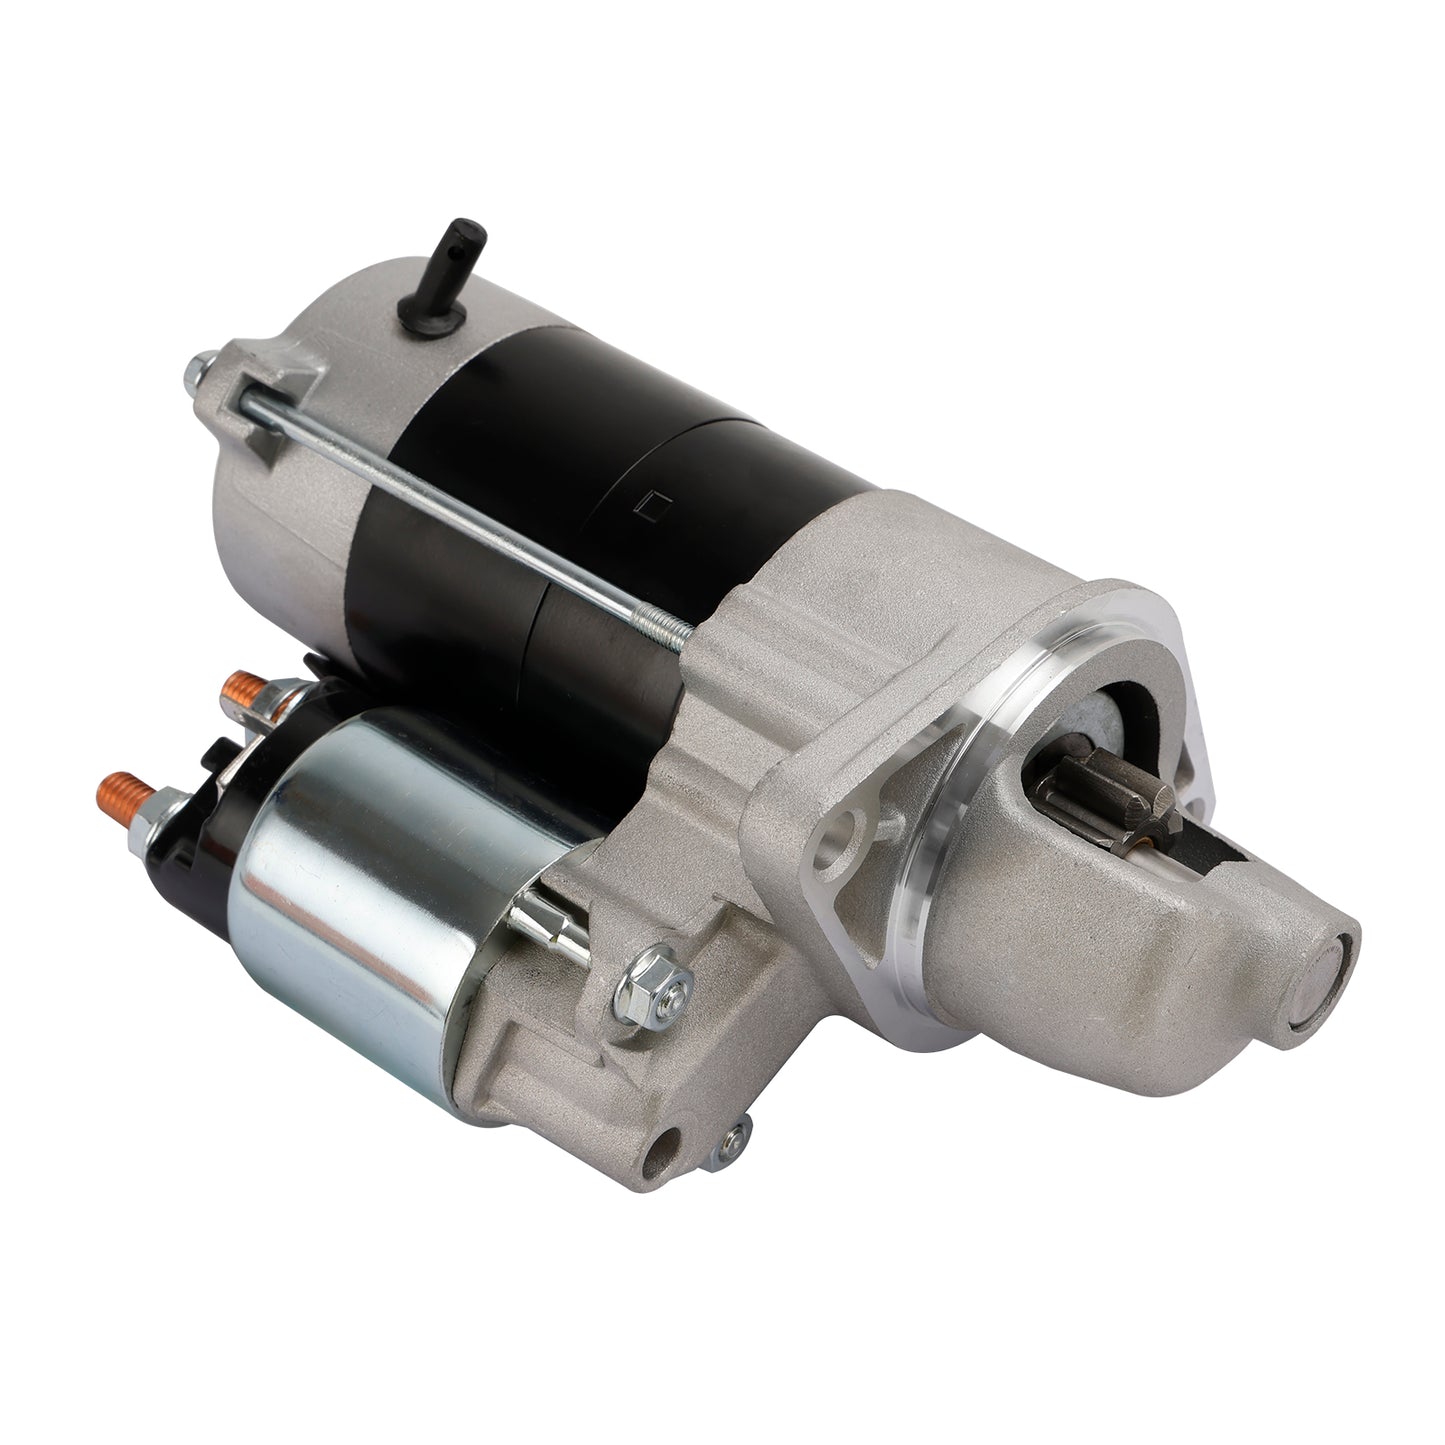 12V Gear Reduction Starter Motor 1G023-63010 For Kubota Mower 6A320-59212 Generic